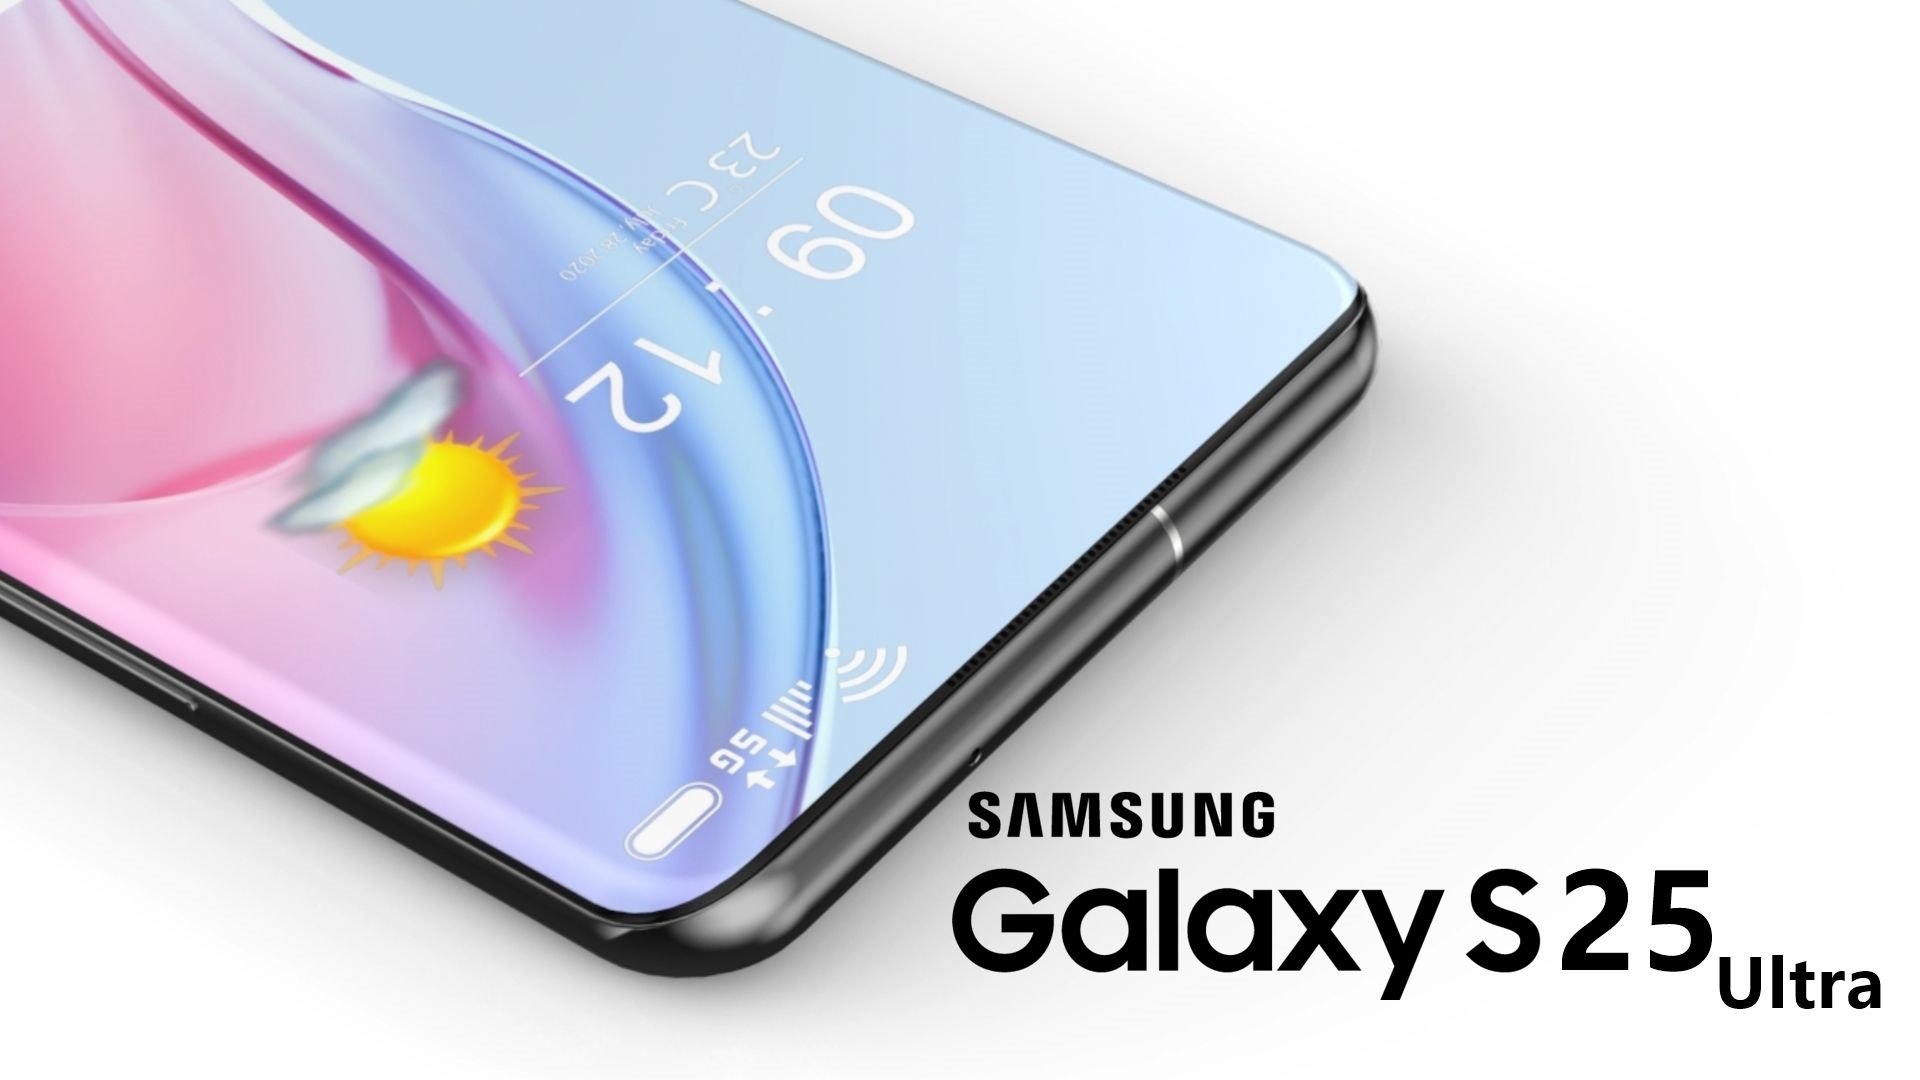 Samsung GALAXY S25 reveló nuevos cambios en las cámaras principales